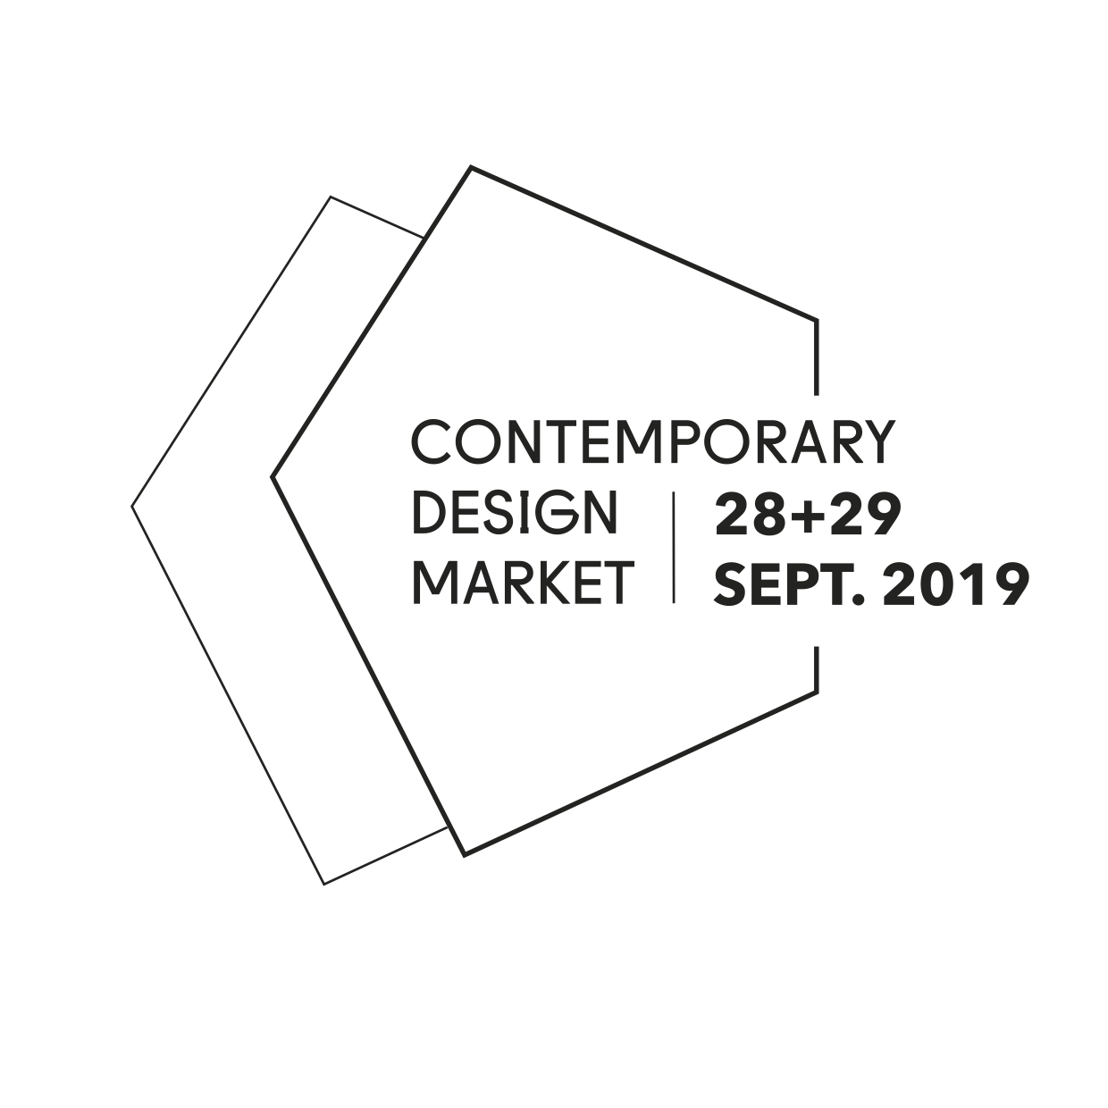 De Contemporary Design Market: hedendaags design, rechtstreeks van bij de ontwerper!